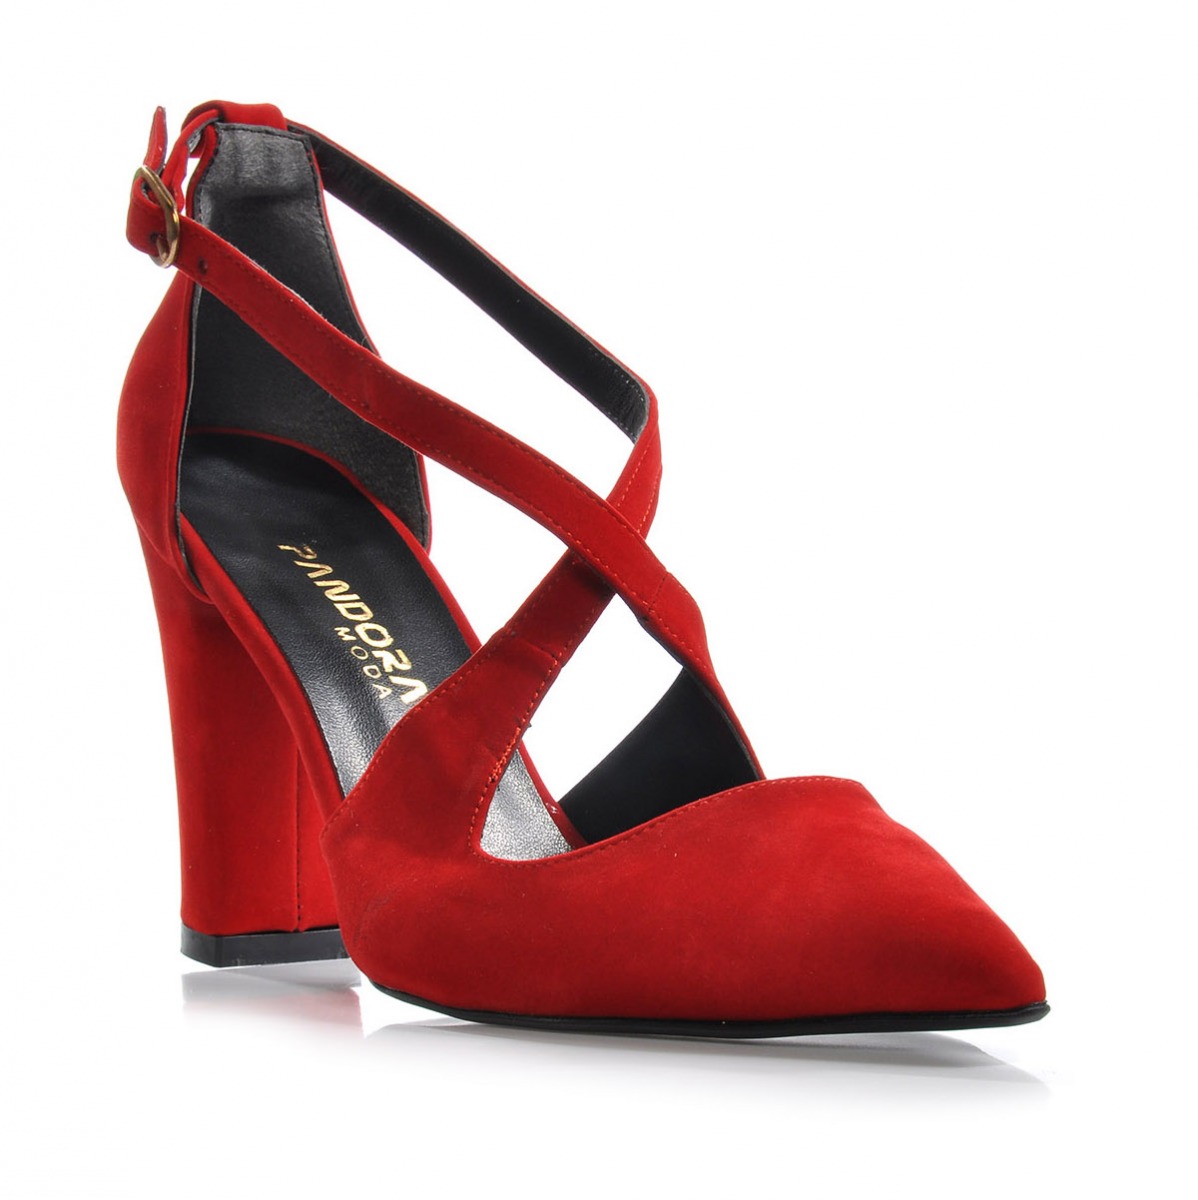 Flo Kadın  Kırmızı-Süet Klasik Topuklu Ayakkabı VZN-179Y. 1